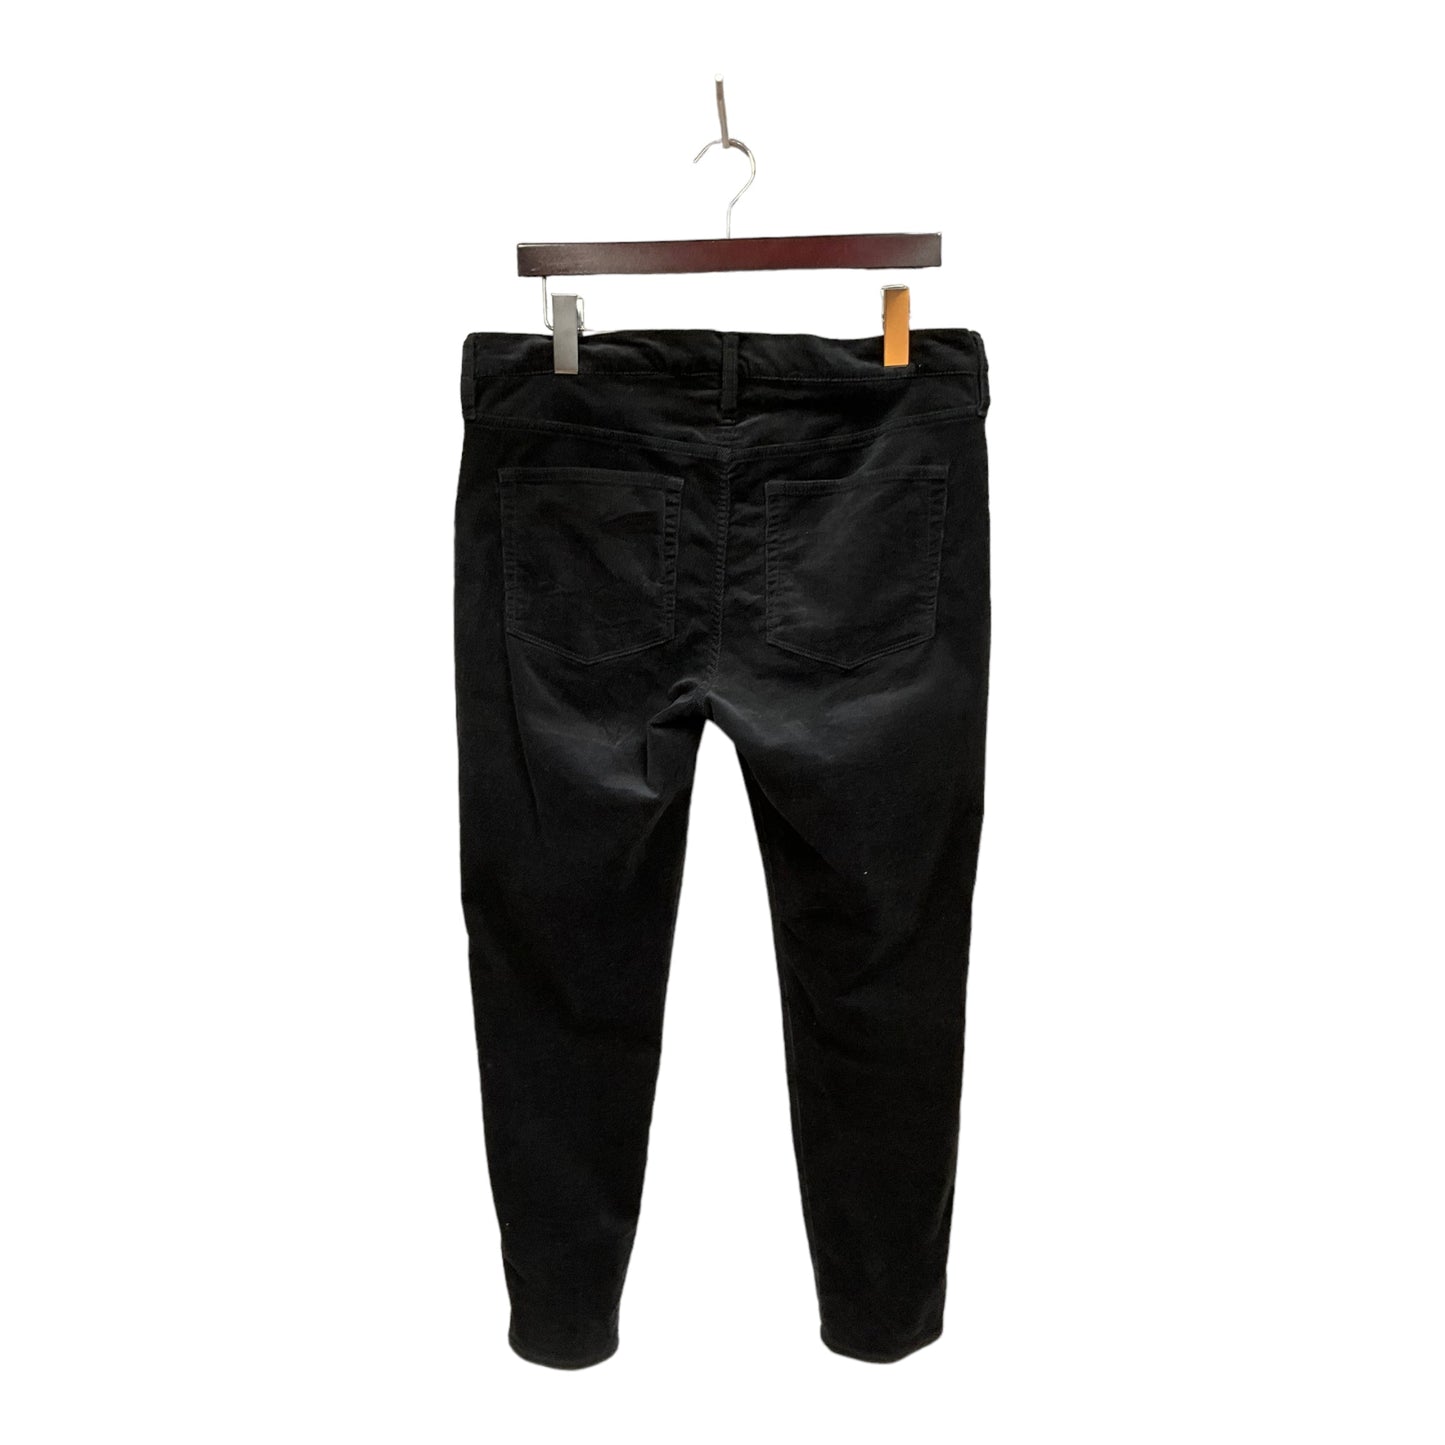 Pants Corduroy By J Crew  Size: 10